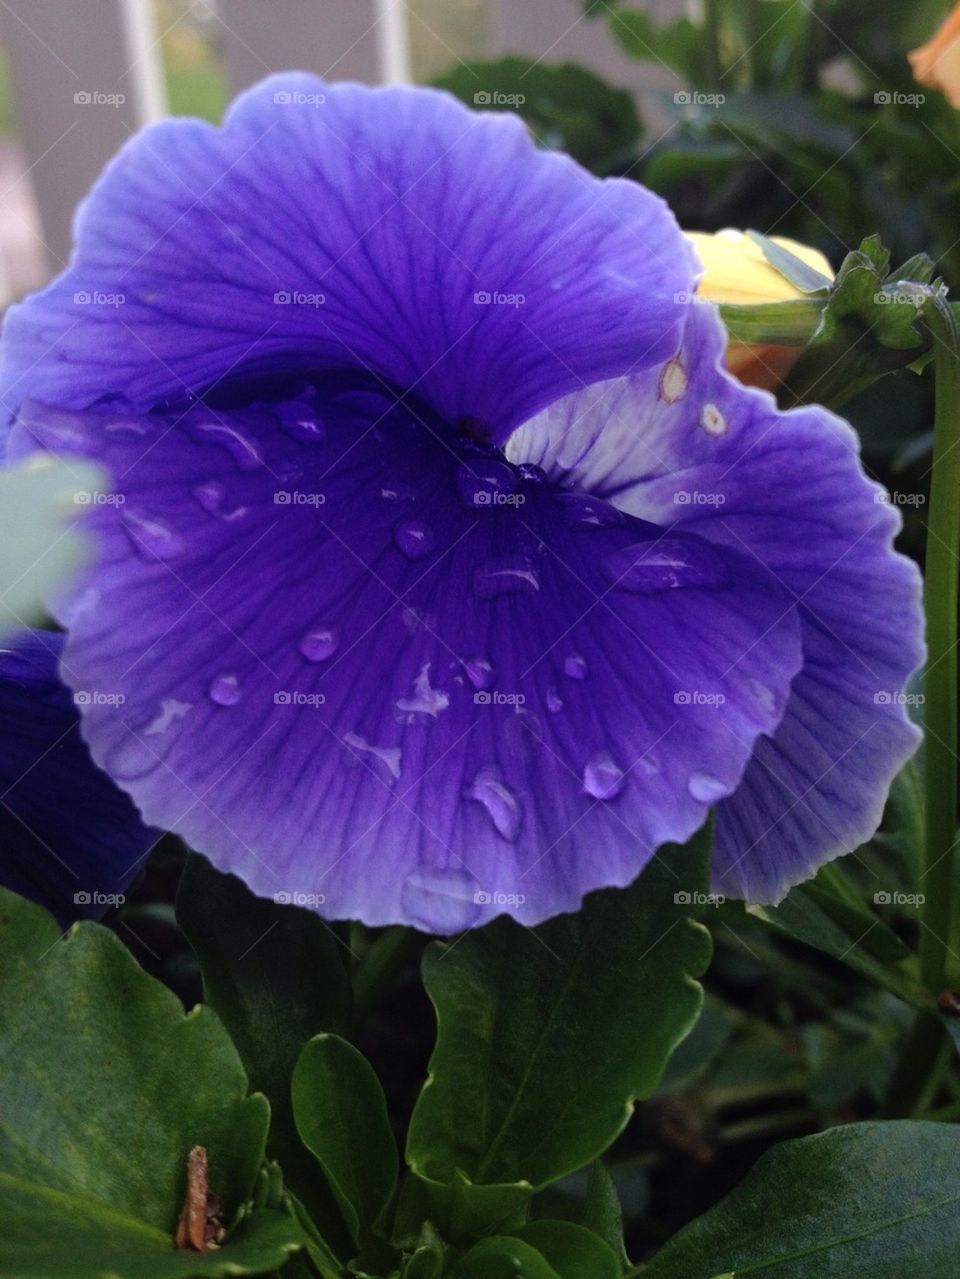 garden flower purple rose by lucifergabriel